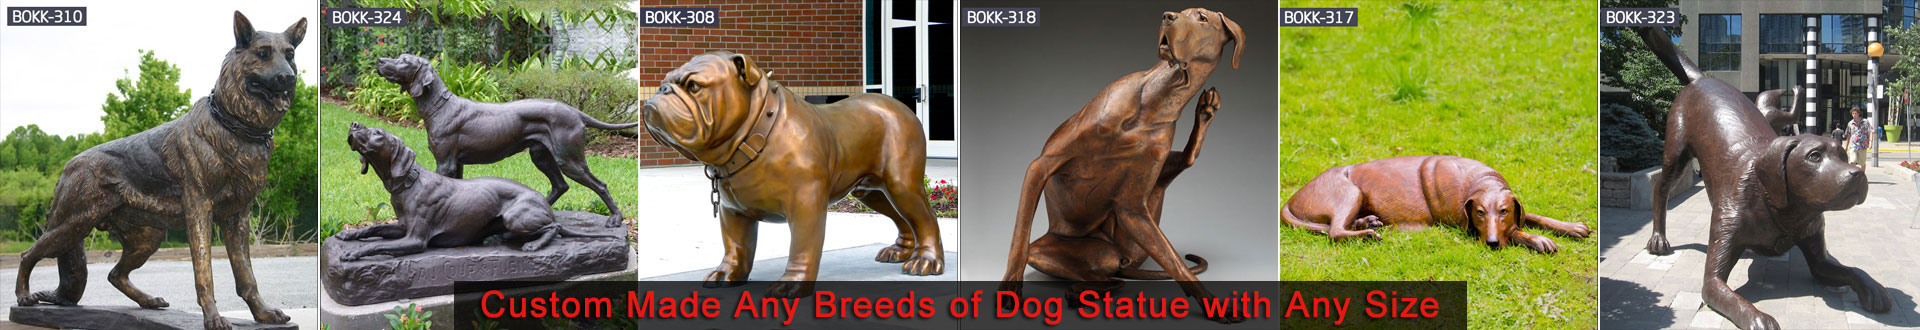 Bronze Bulldog Decor Dog Statues for Outside for Memorial